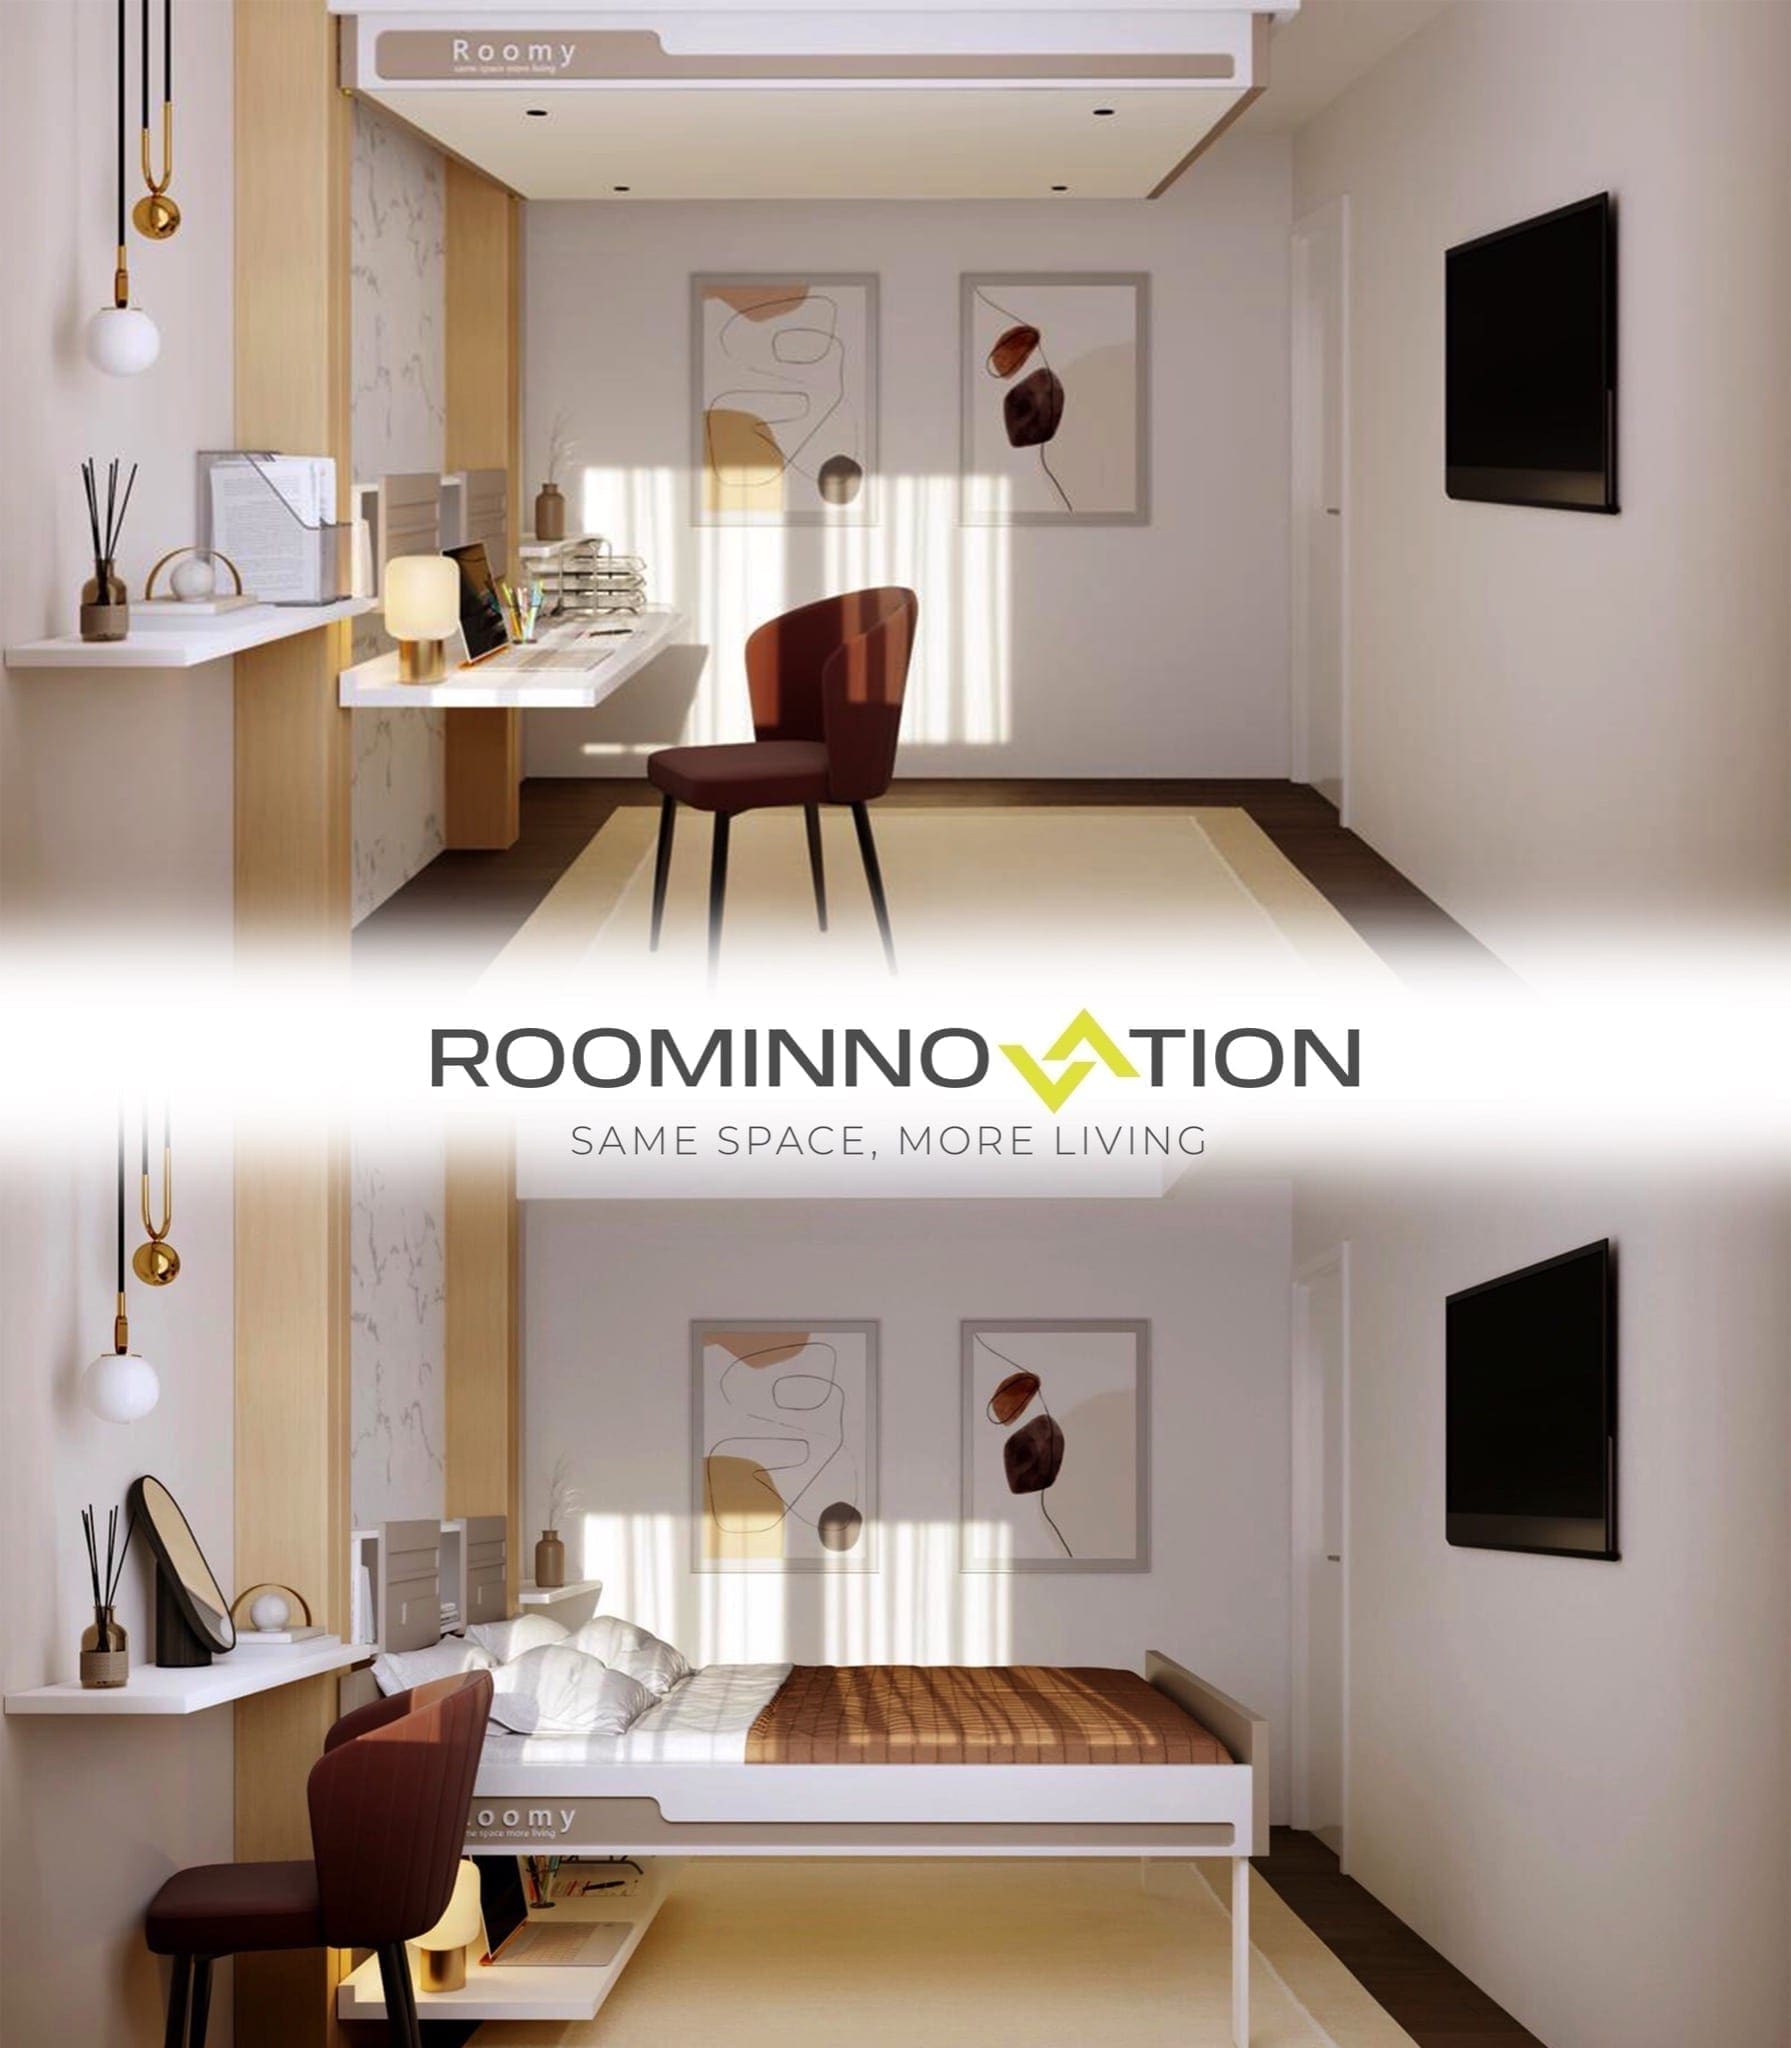 pat blur alb 1 copy - RoomInnovation, conceptul inovator care revoluționează conceptul clasic de apartament